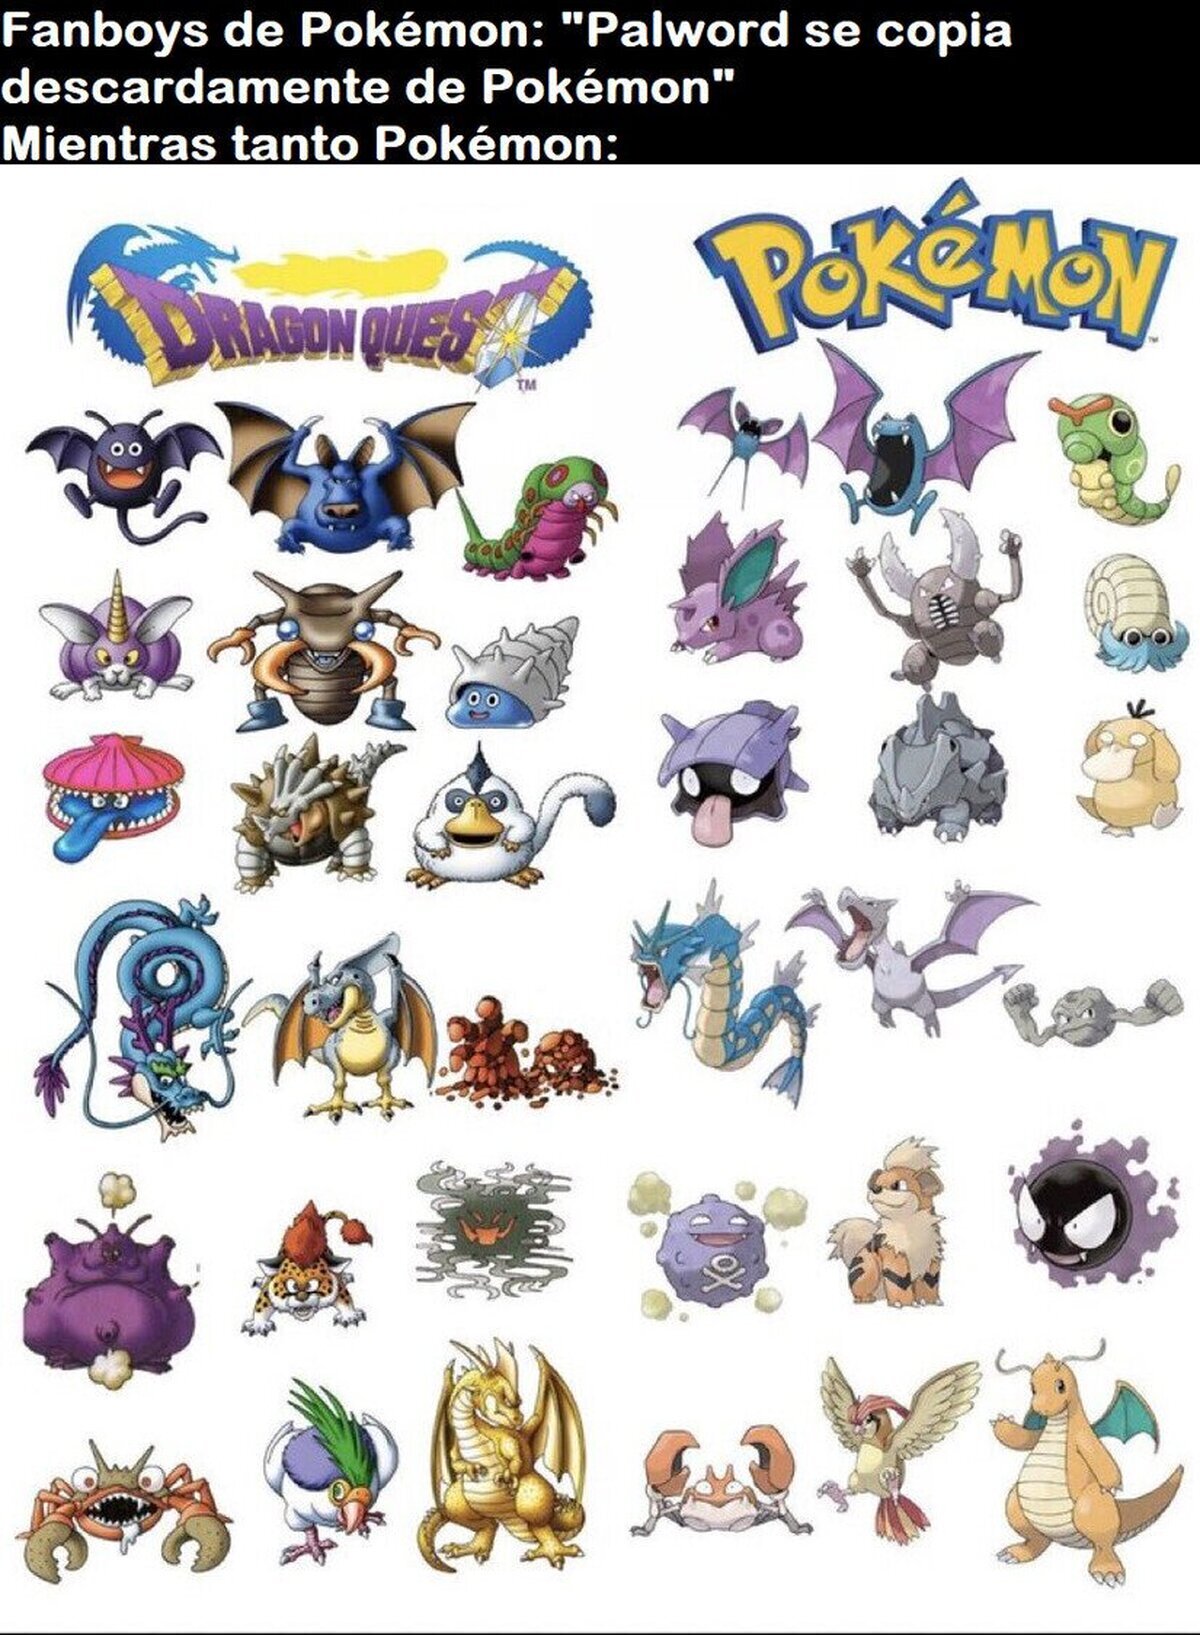 Nadie tiene en cuenta que Pokémon fue la primera en copiarse de Dragon Quest 